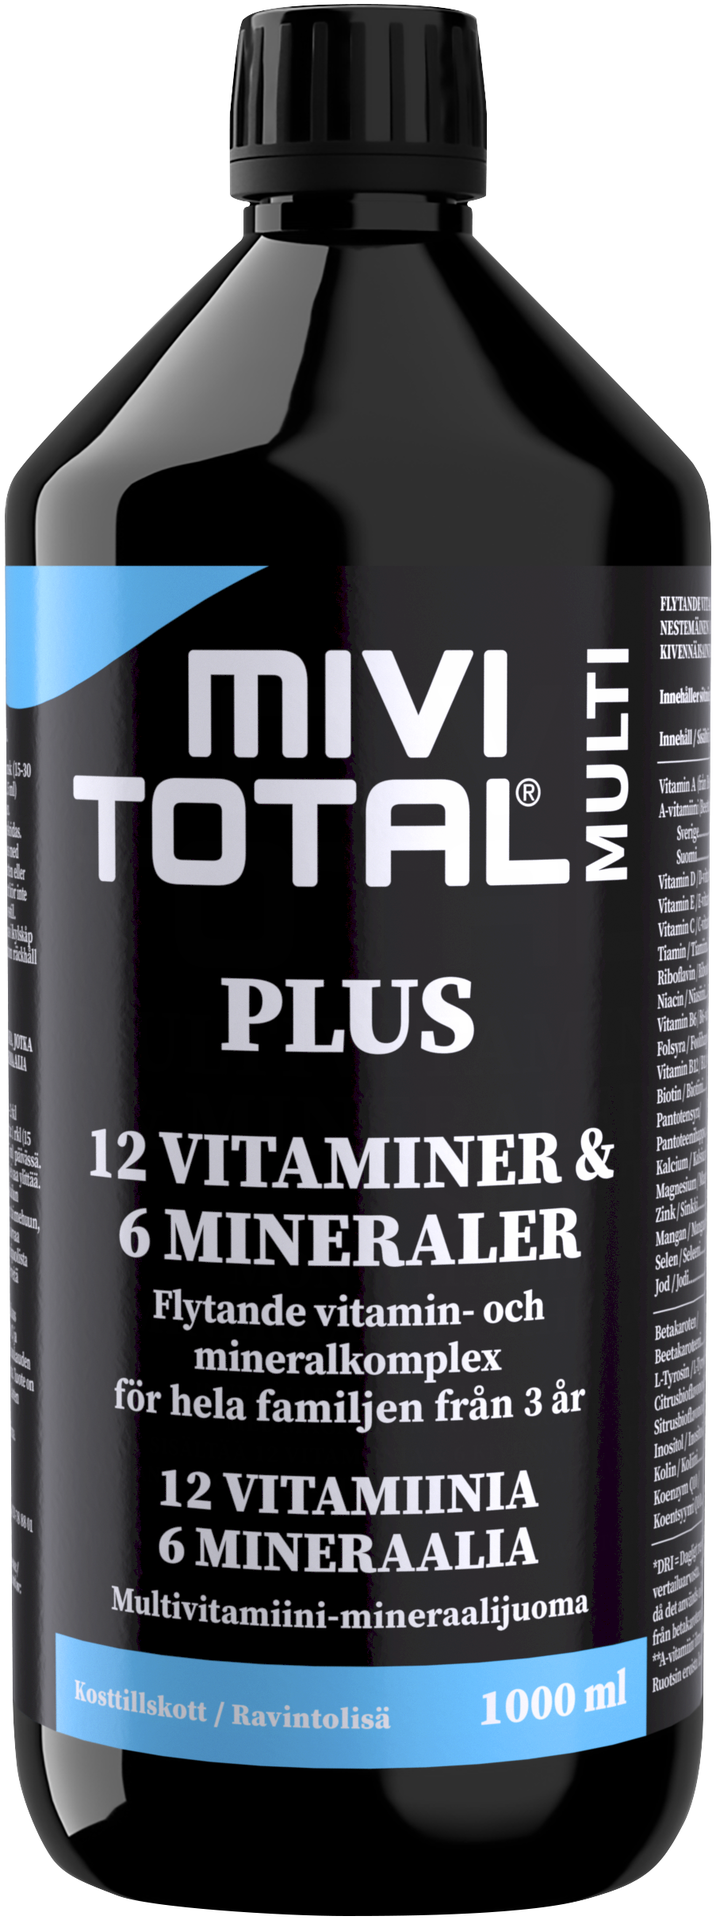 Mivitotal Plus 1000 ml